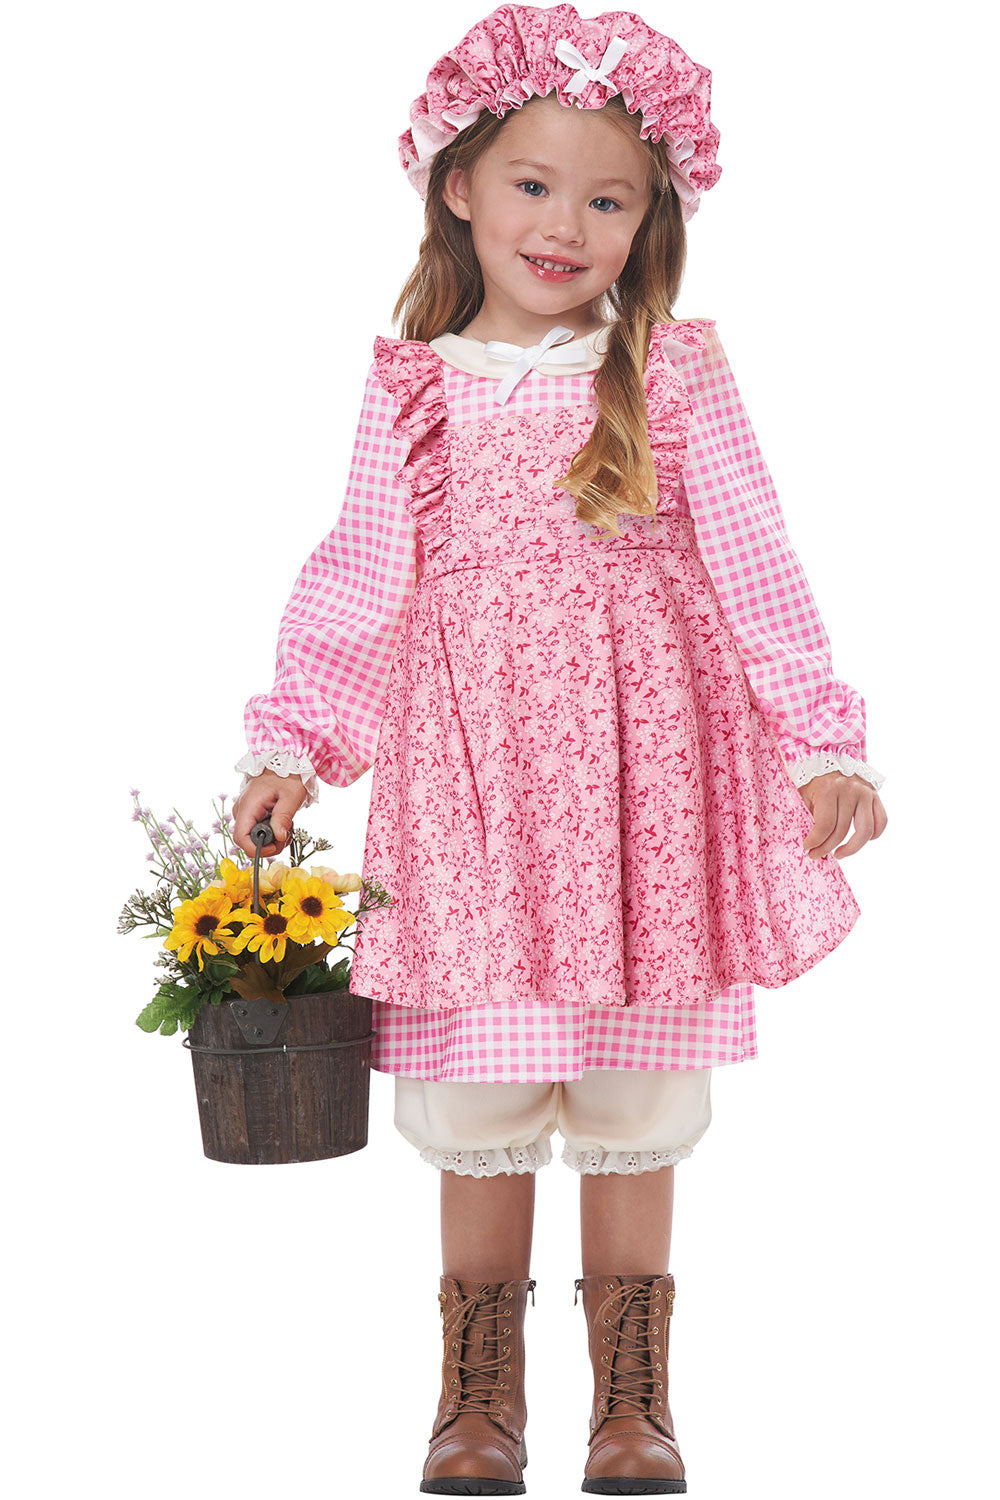 LITTLE PRAIRIE GIRL/TODDLER California Costume 00127